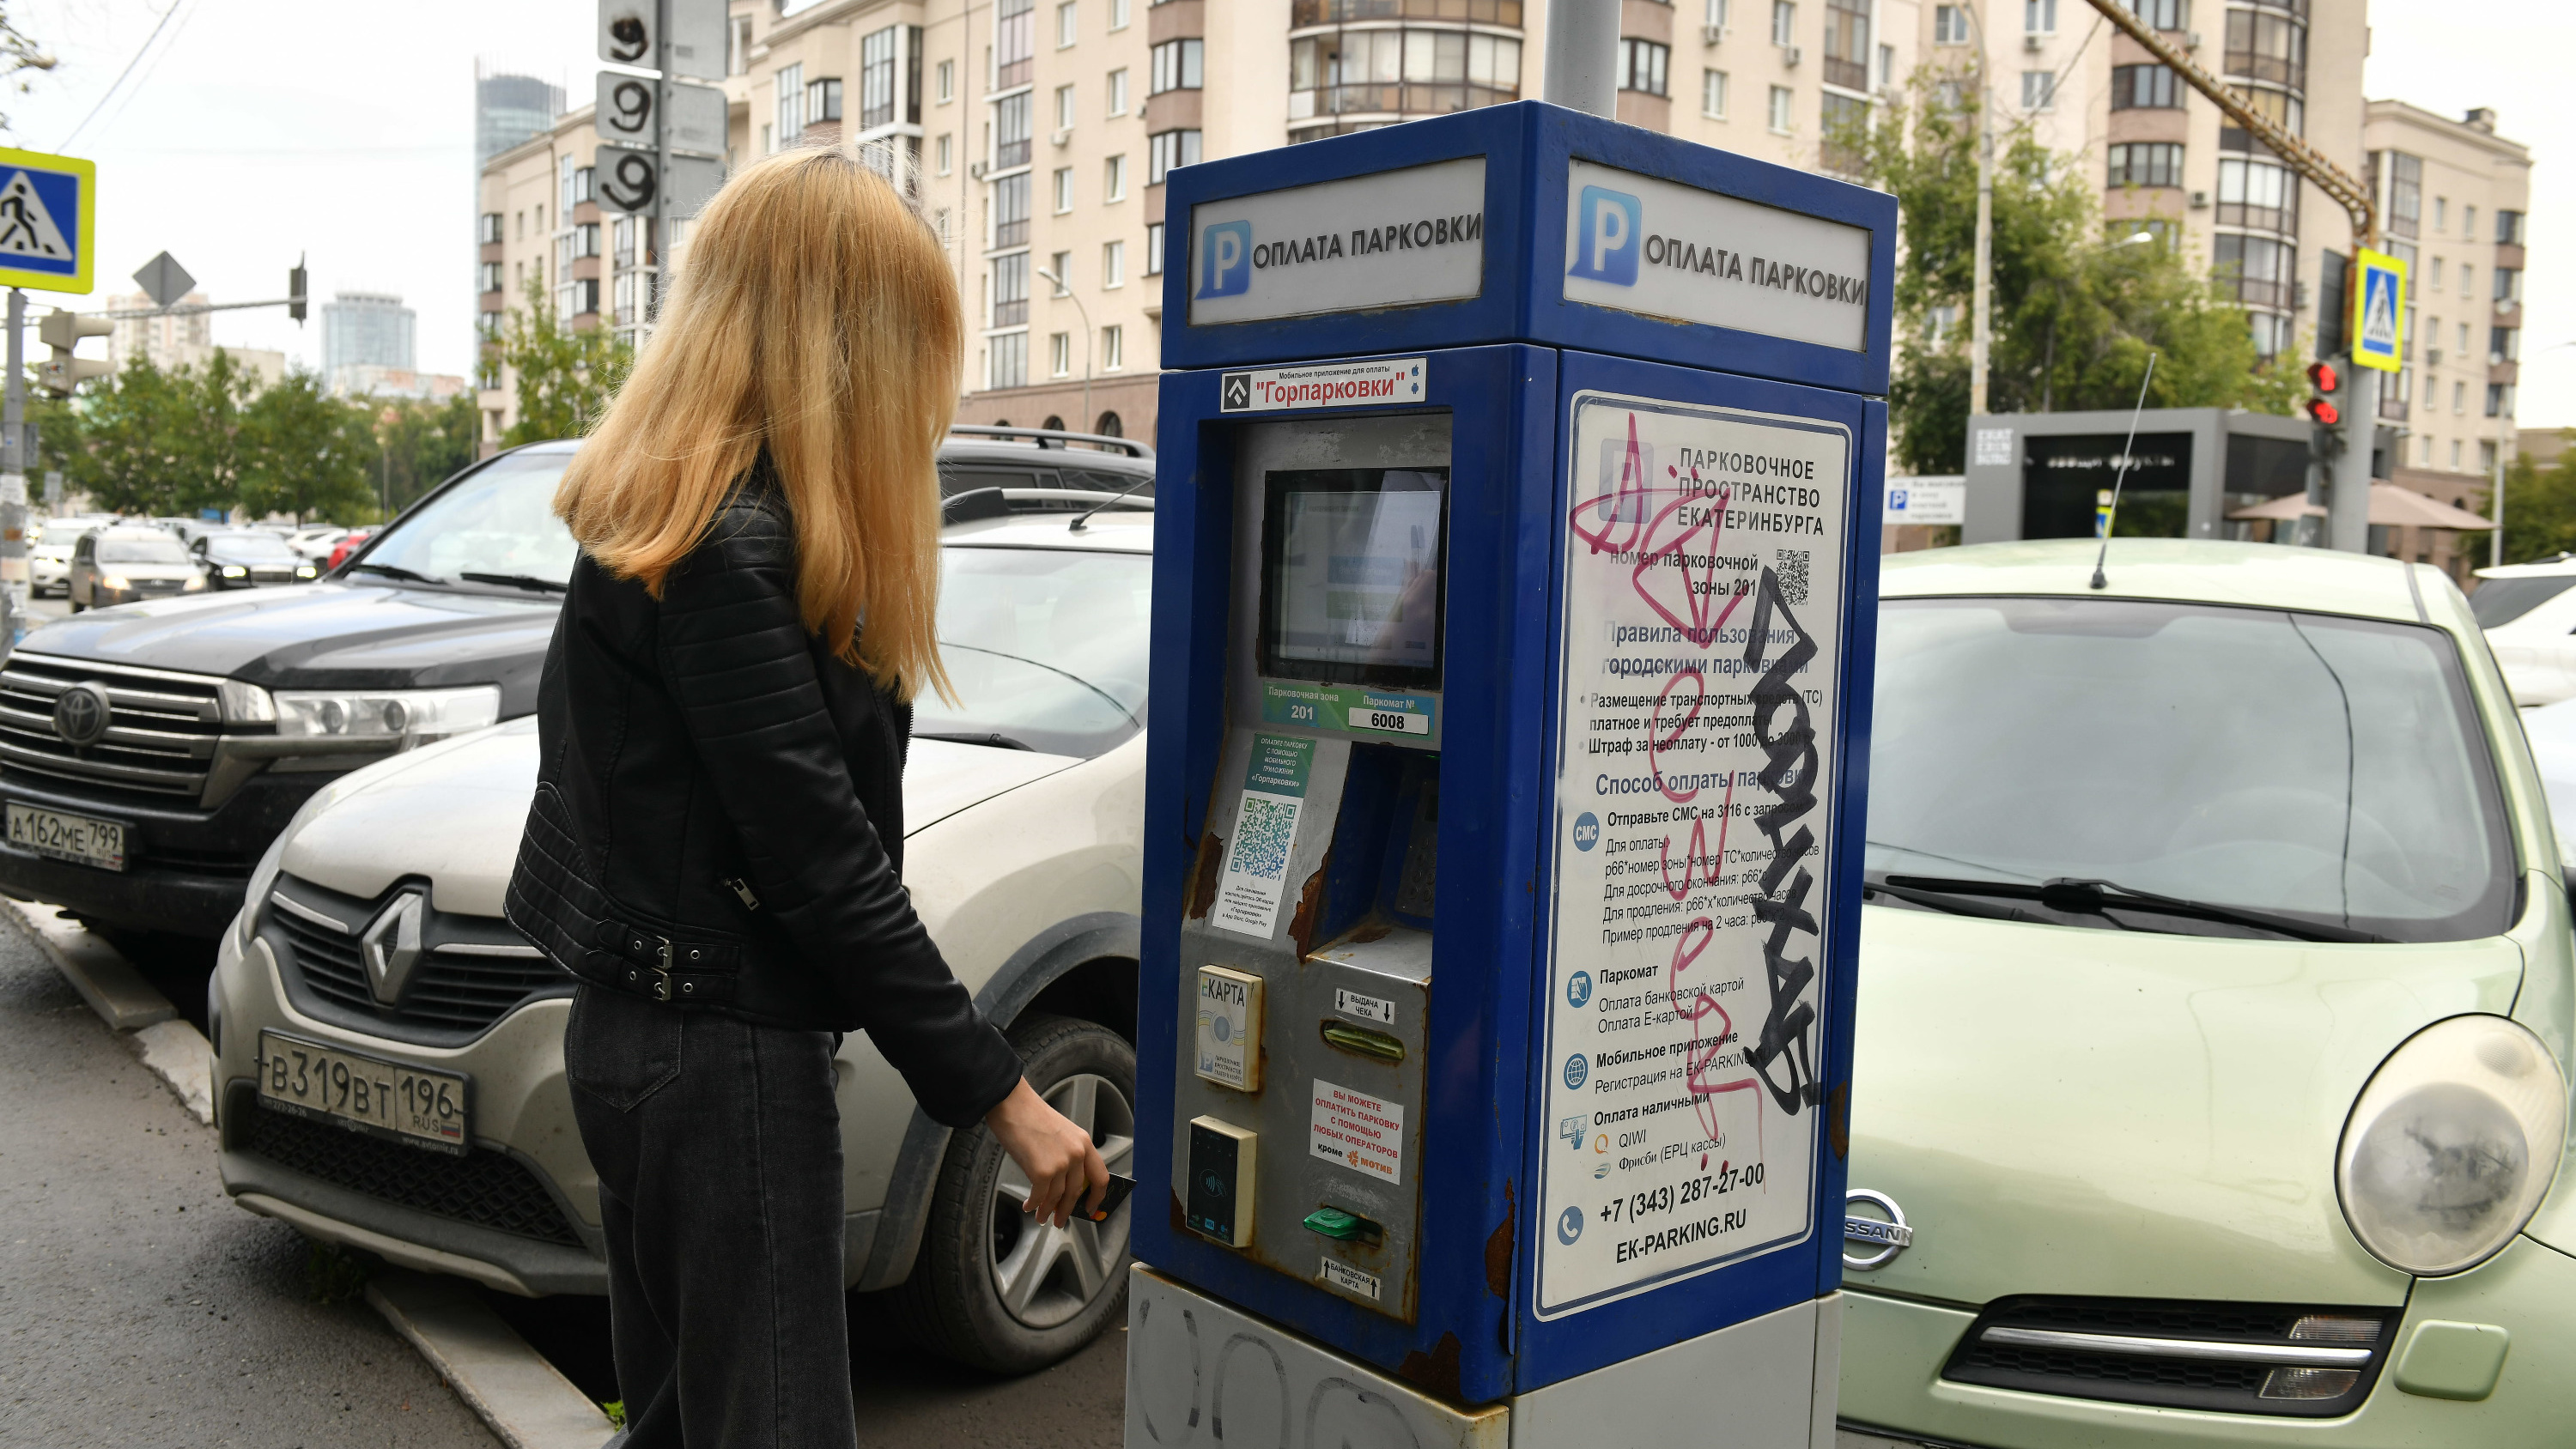 Почему в центре Екатеринбурга нужно платить за парковку? Ответ эксперта недовольным водителям